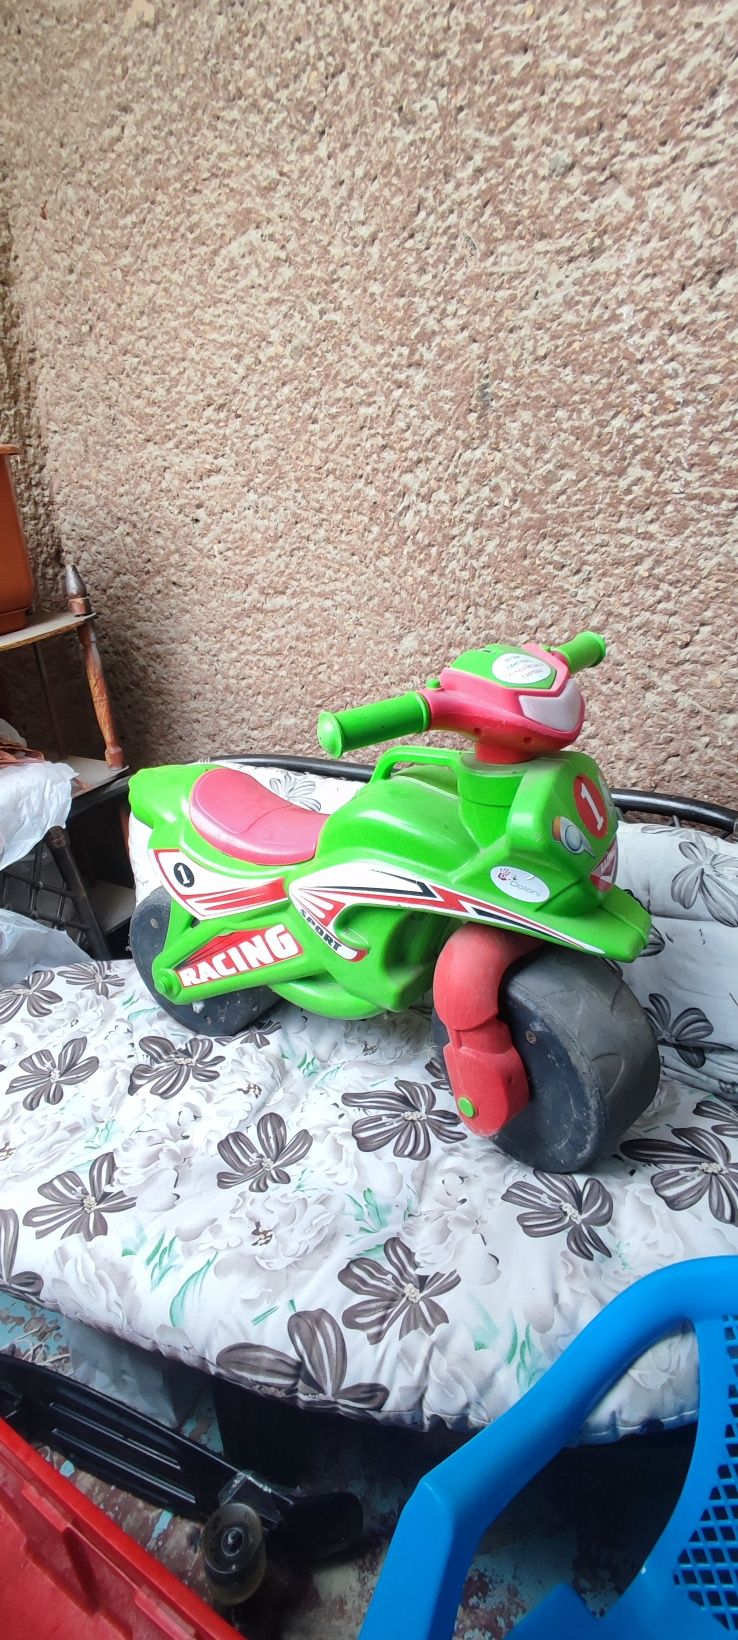 Продам дитячий мотоцикл